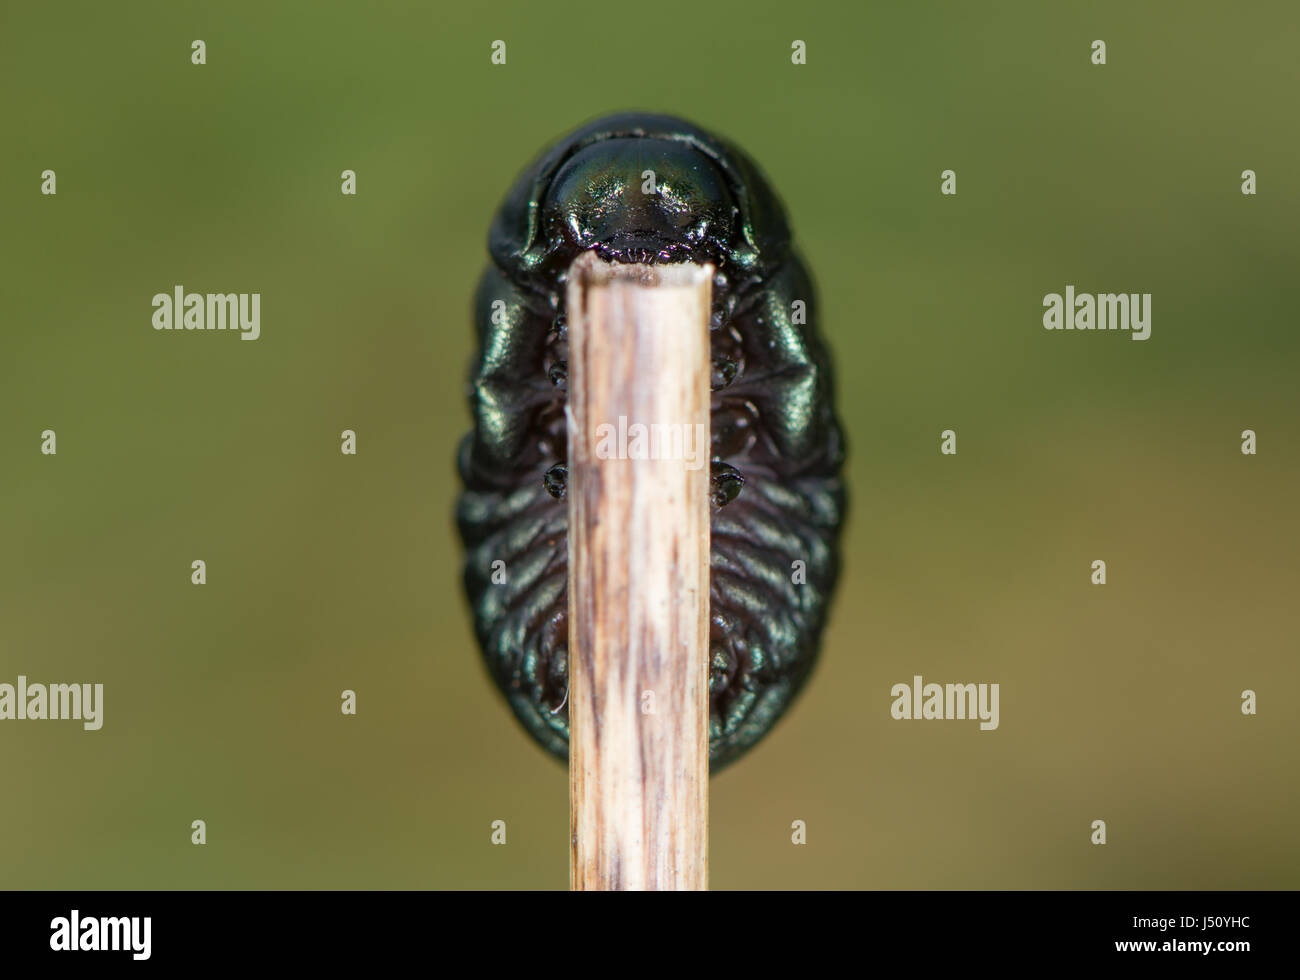 Blutige Nase (Timarcha Tenebricosa) Käferlarve. Larvenstadium des Käfers in der Familie Crysomelidae, gefunden Fütterung auf fressen (Galium sp.) Stockfoto